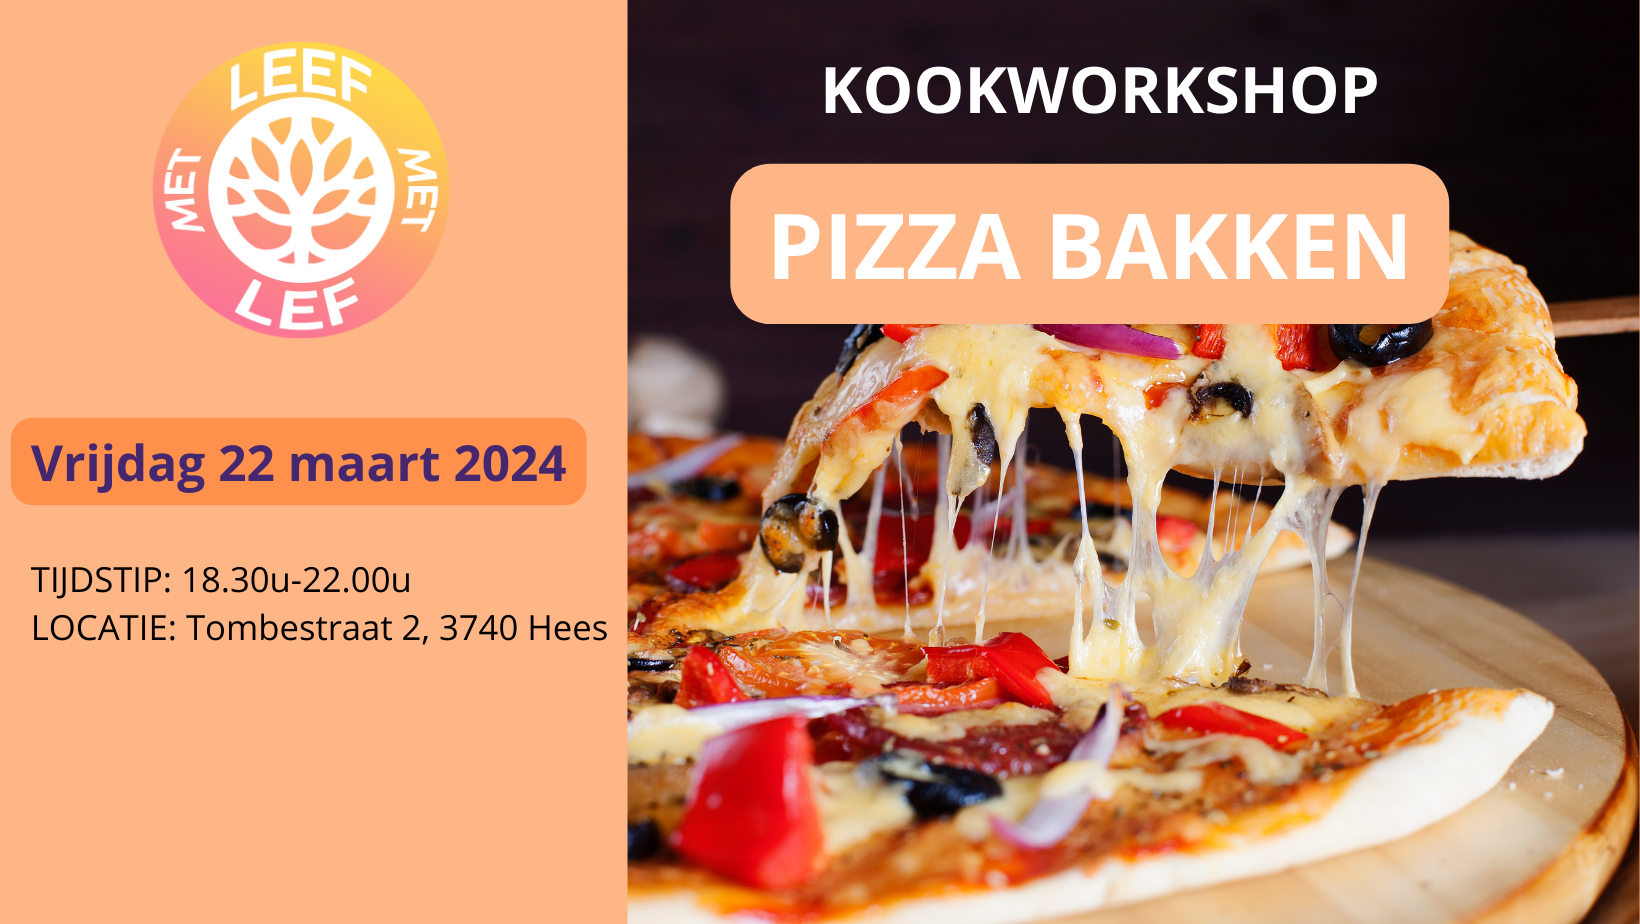 Kookworkshop: PIZZA BAKKEN (vrijdag 22 maart)